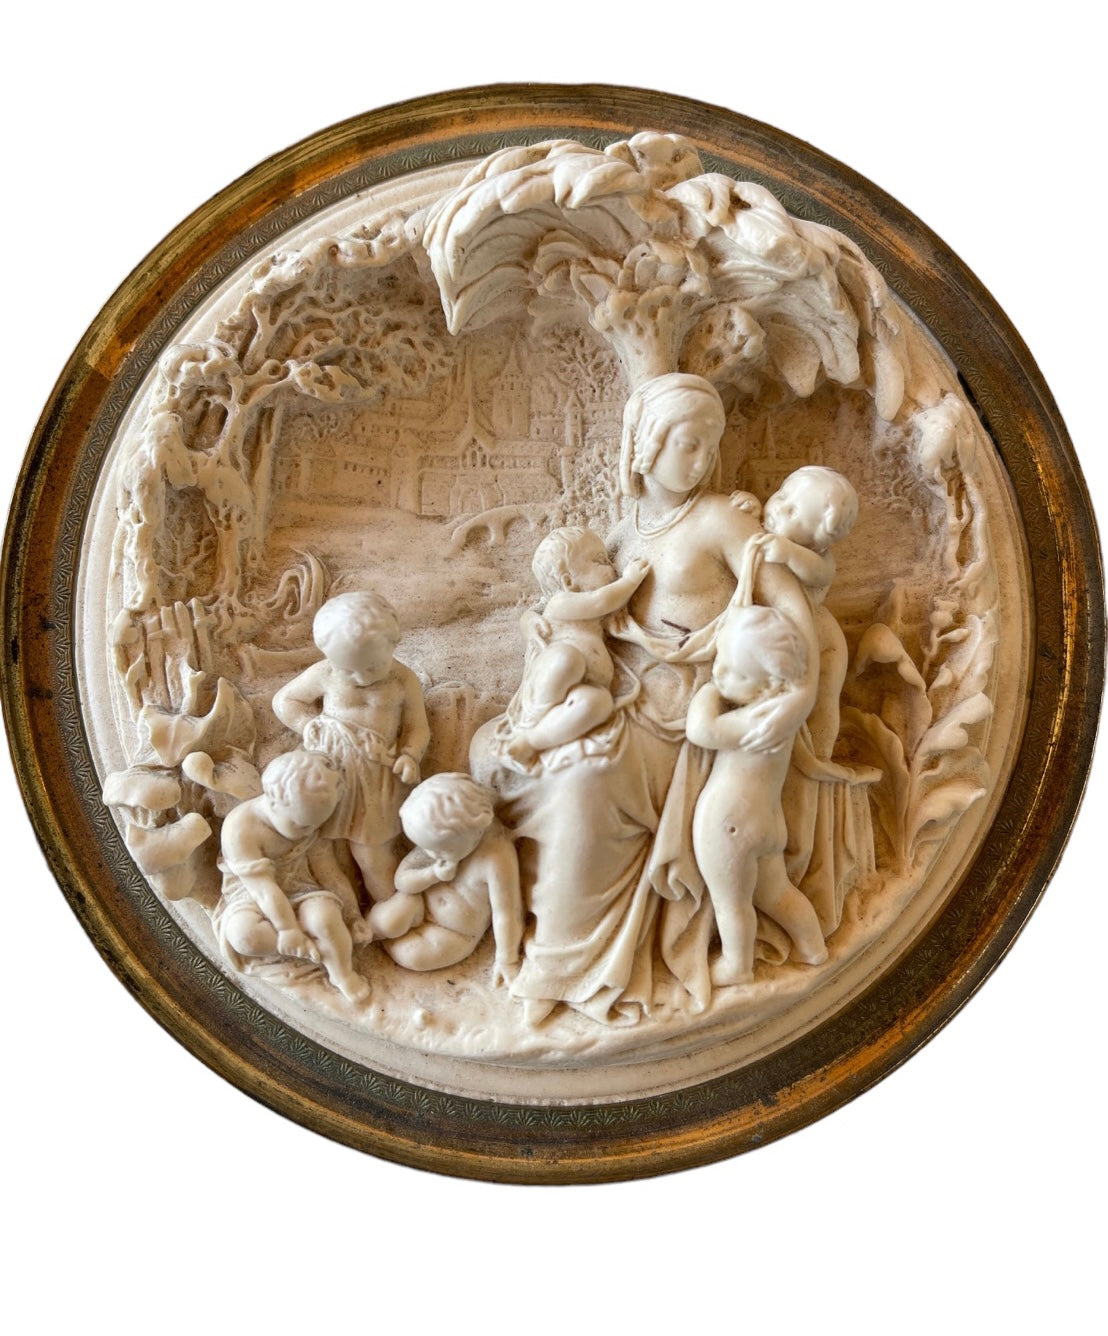 Antique Carved Meerschaum Pierre Alexander Schoenewerk Religious Plaque 19 Century